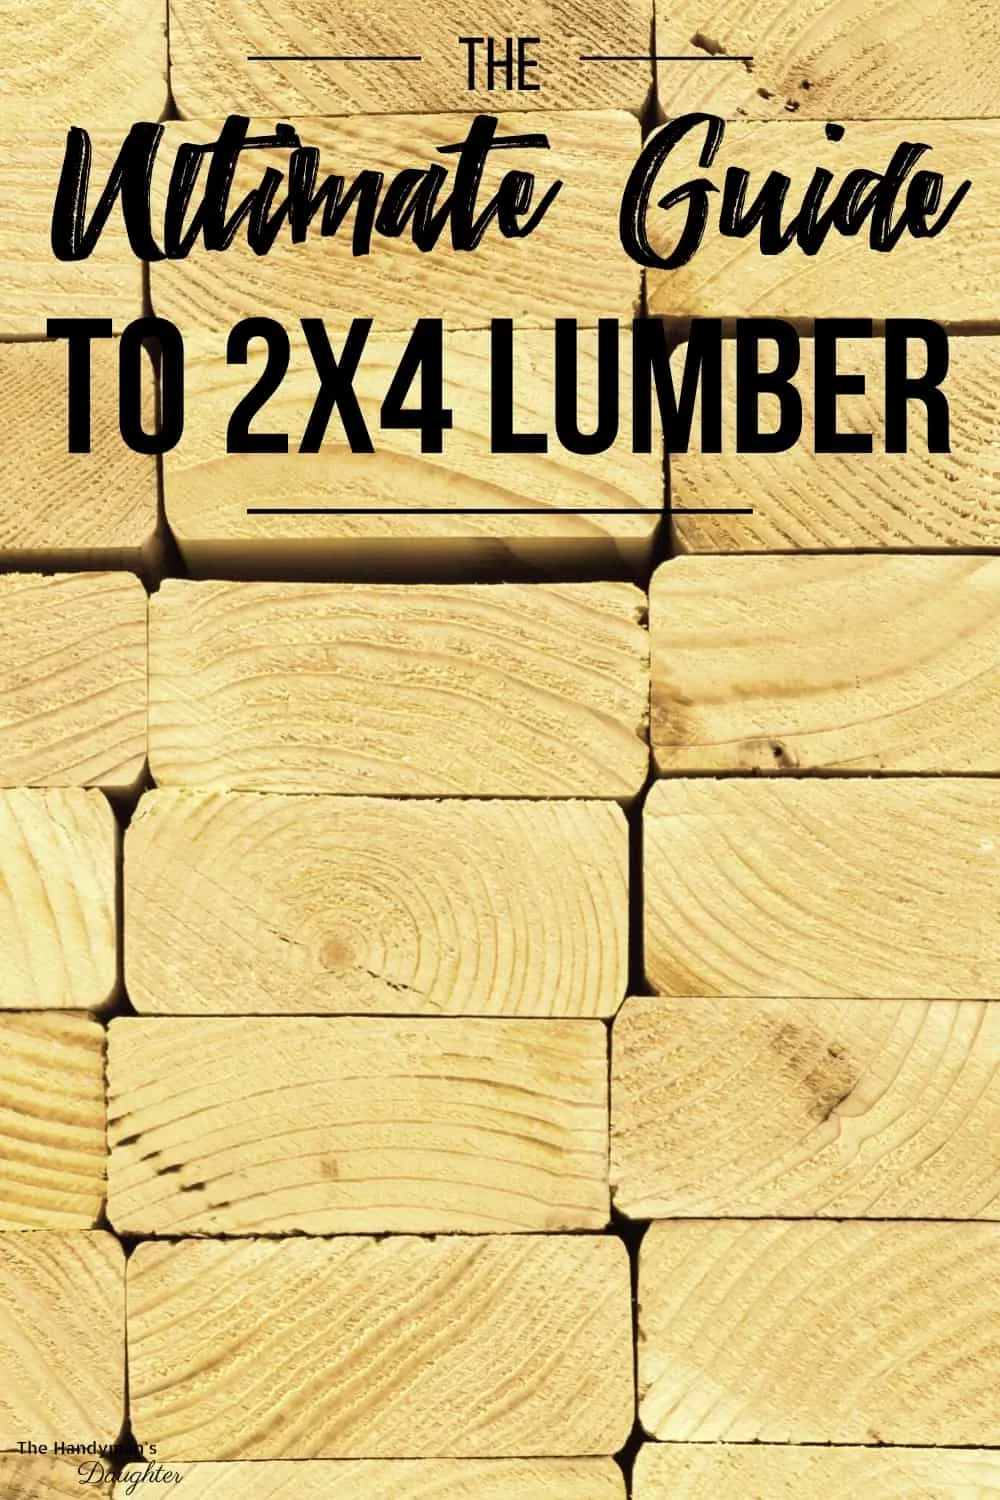 Departments - 2x4 Standard Grade A Lumber